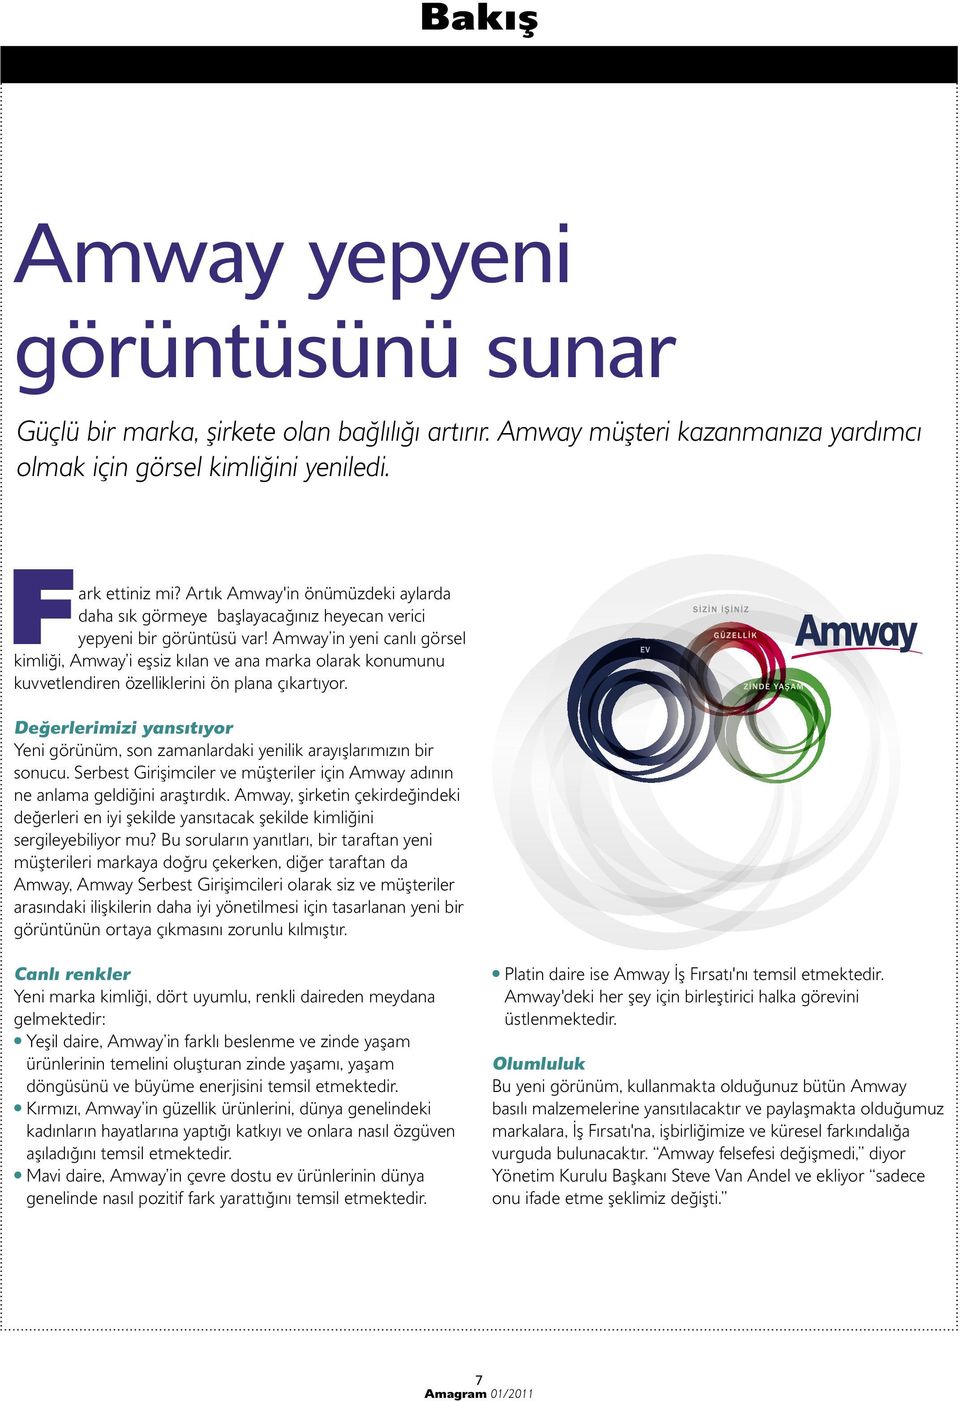 Amway in yeni canlı görsel kimliği, Amway i eşsiz kılan ve ana marka olarak konumunu kuvvetlendiren özelliklerini ön plana çıkartıyor.